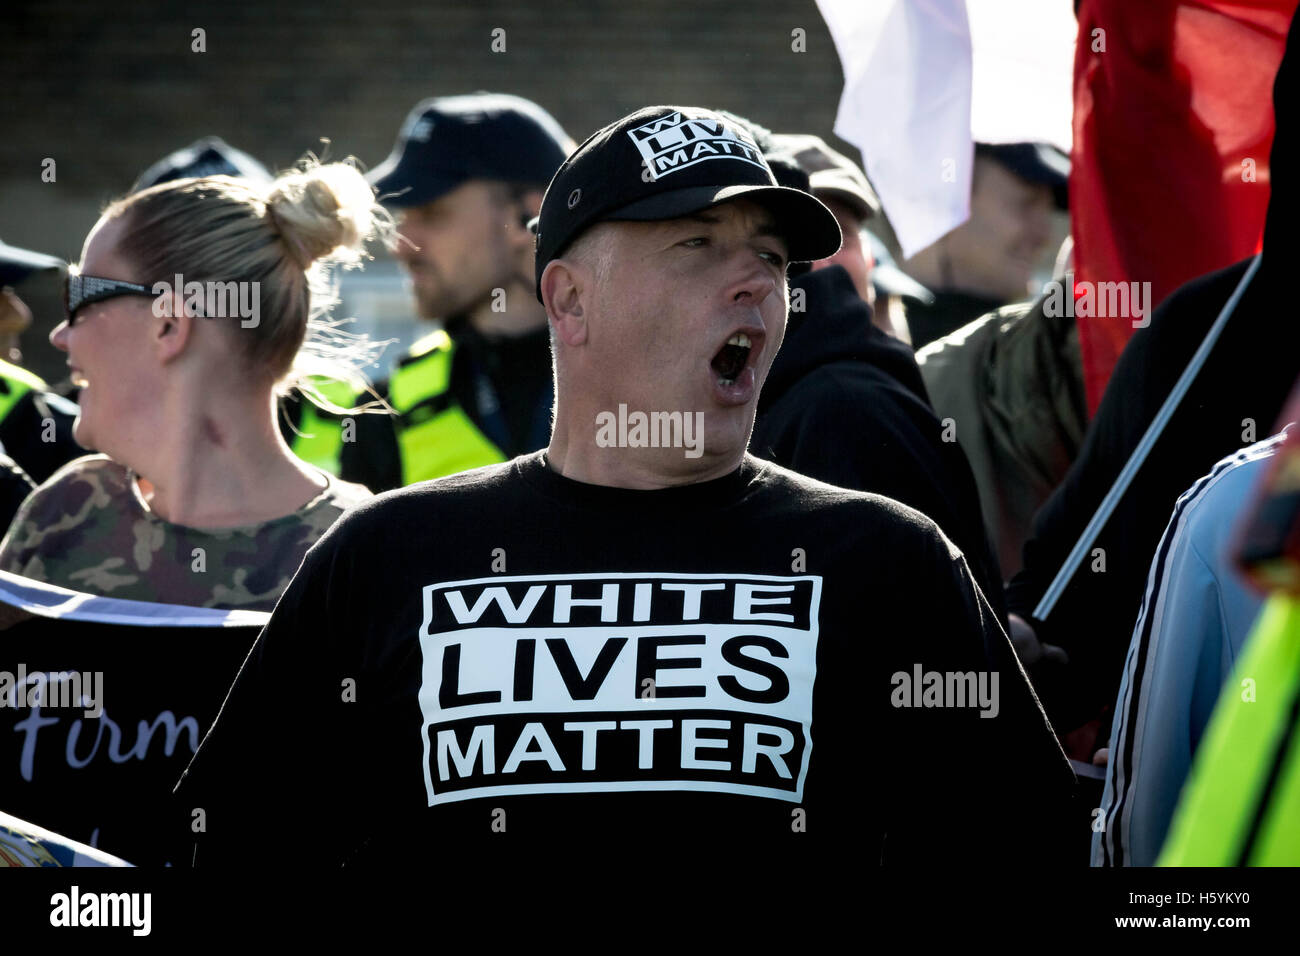 'White Lives Matter’ far-right protest in Margate, Kent, UK. Stock Photo